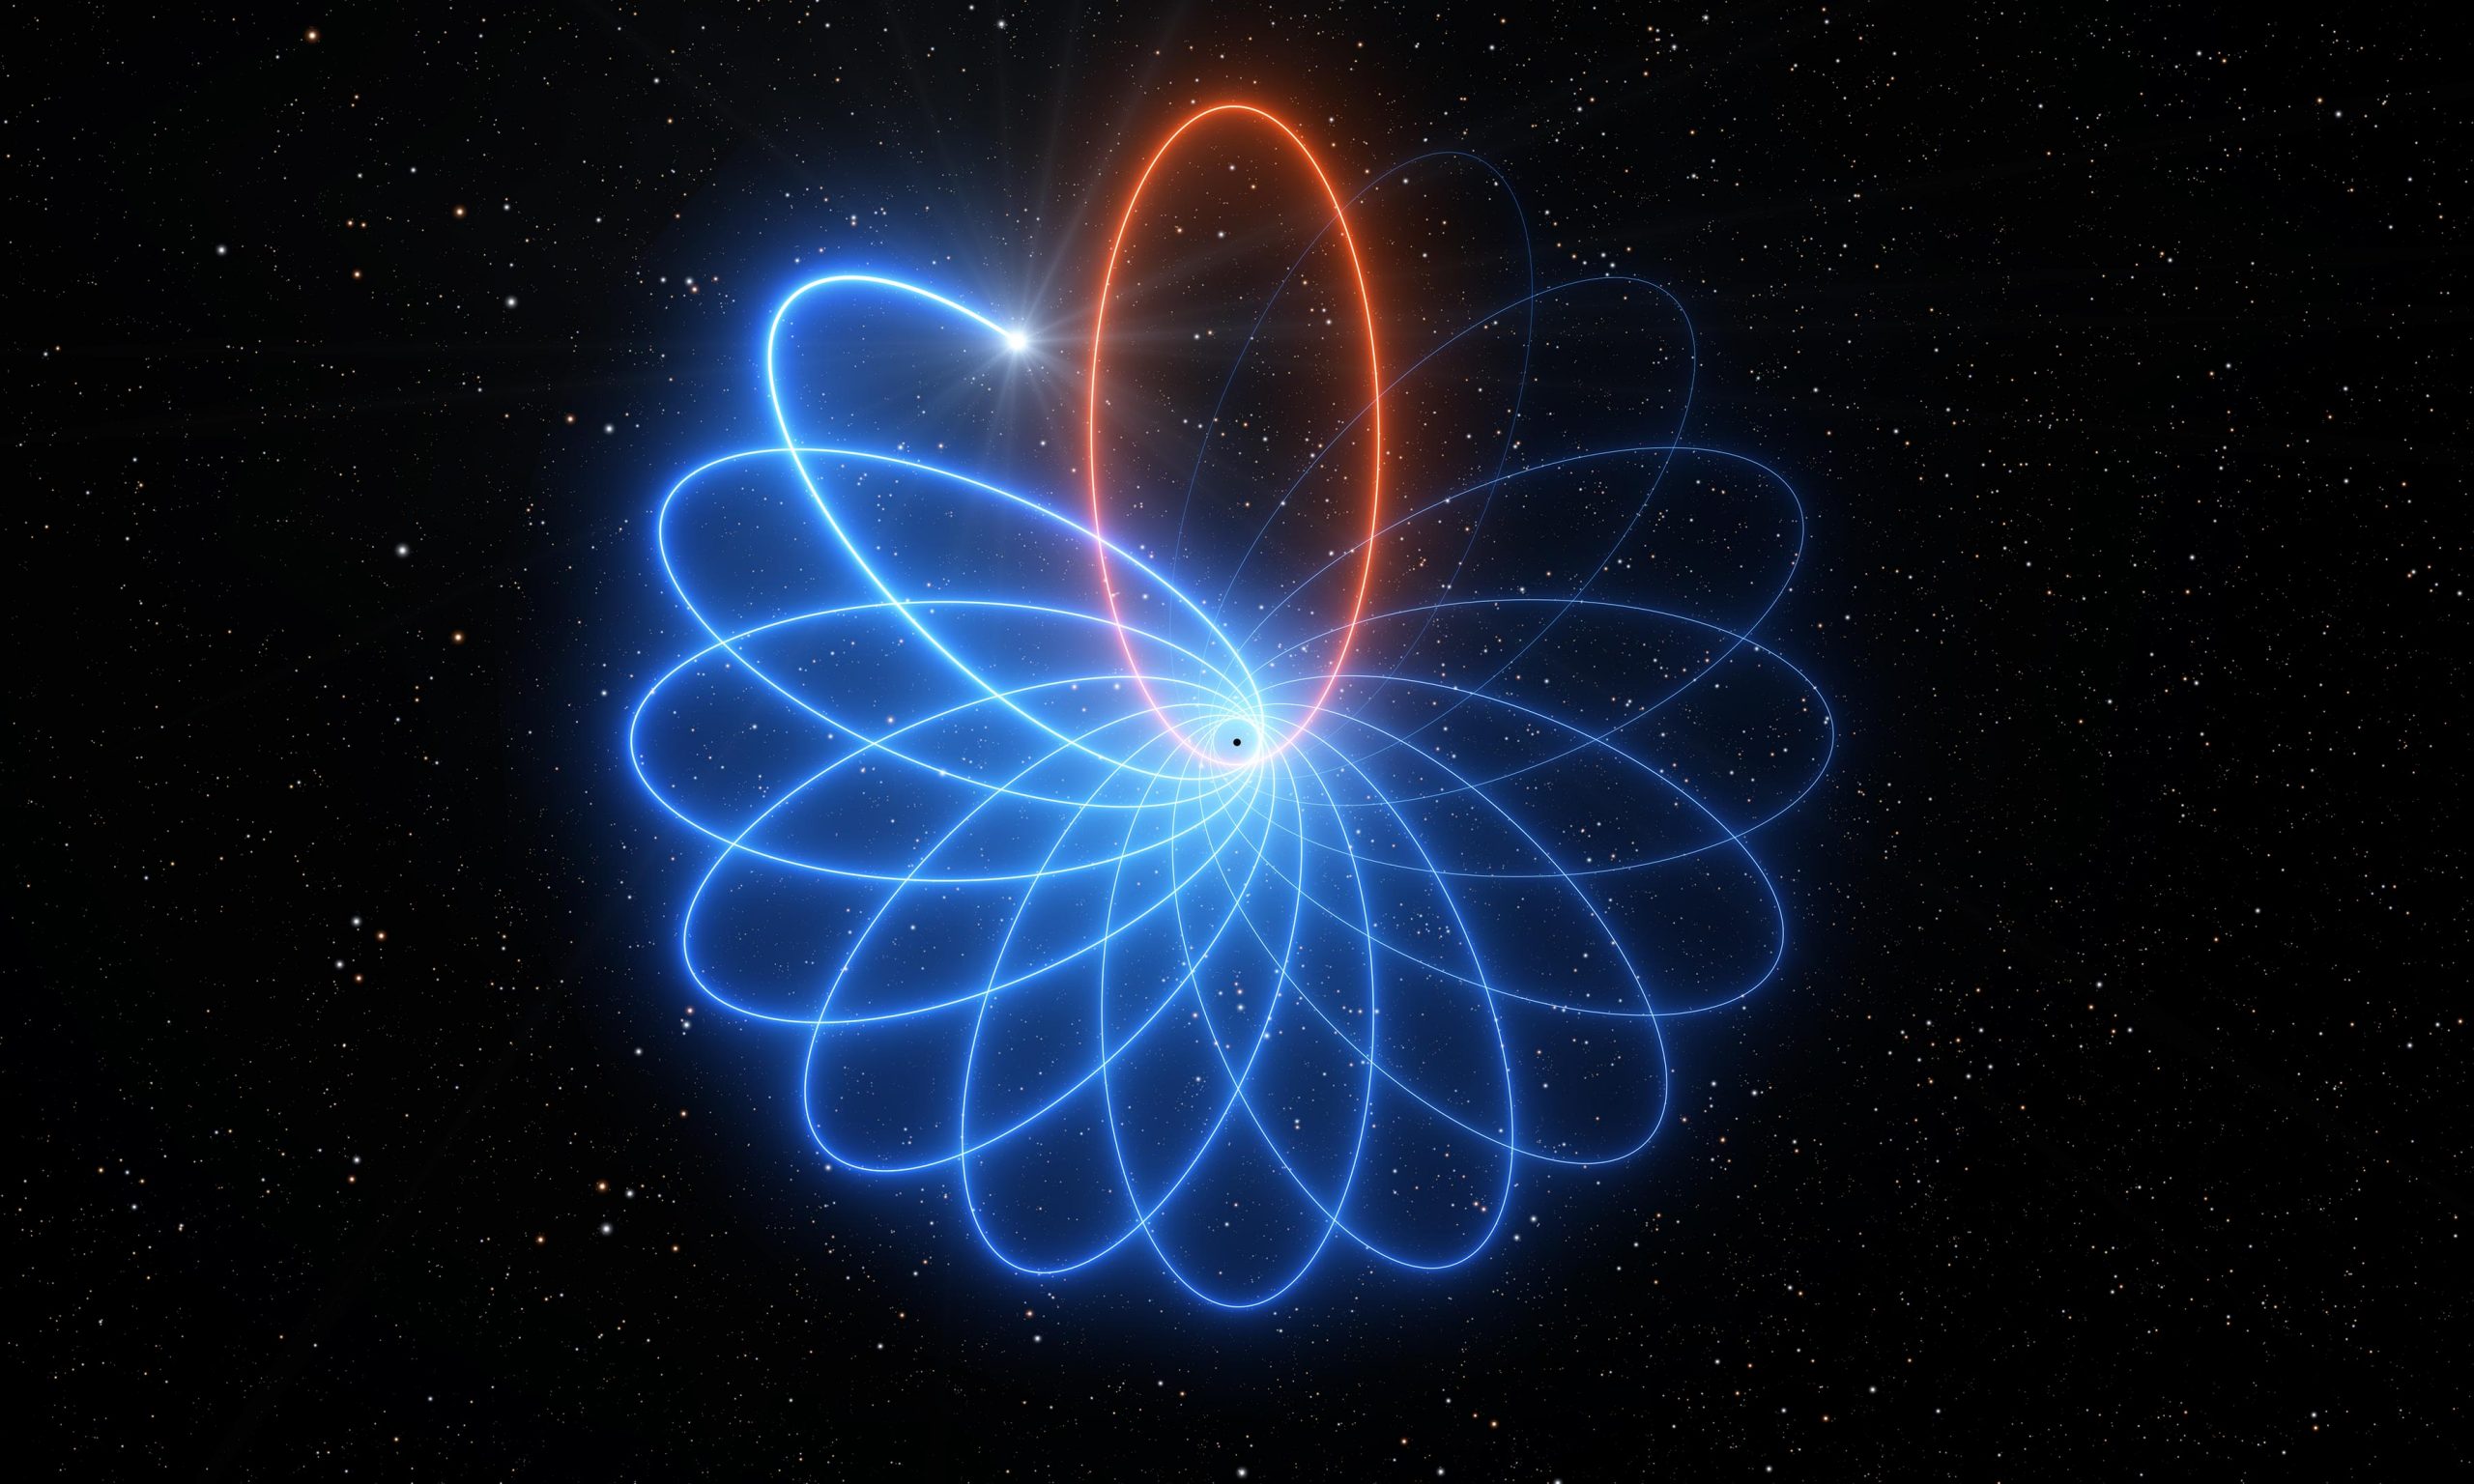 Süper kütleli kara deliğin etrafında 'dans eden' yıldız, Einstein'ı yine haklı çıkardı!